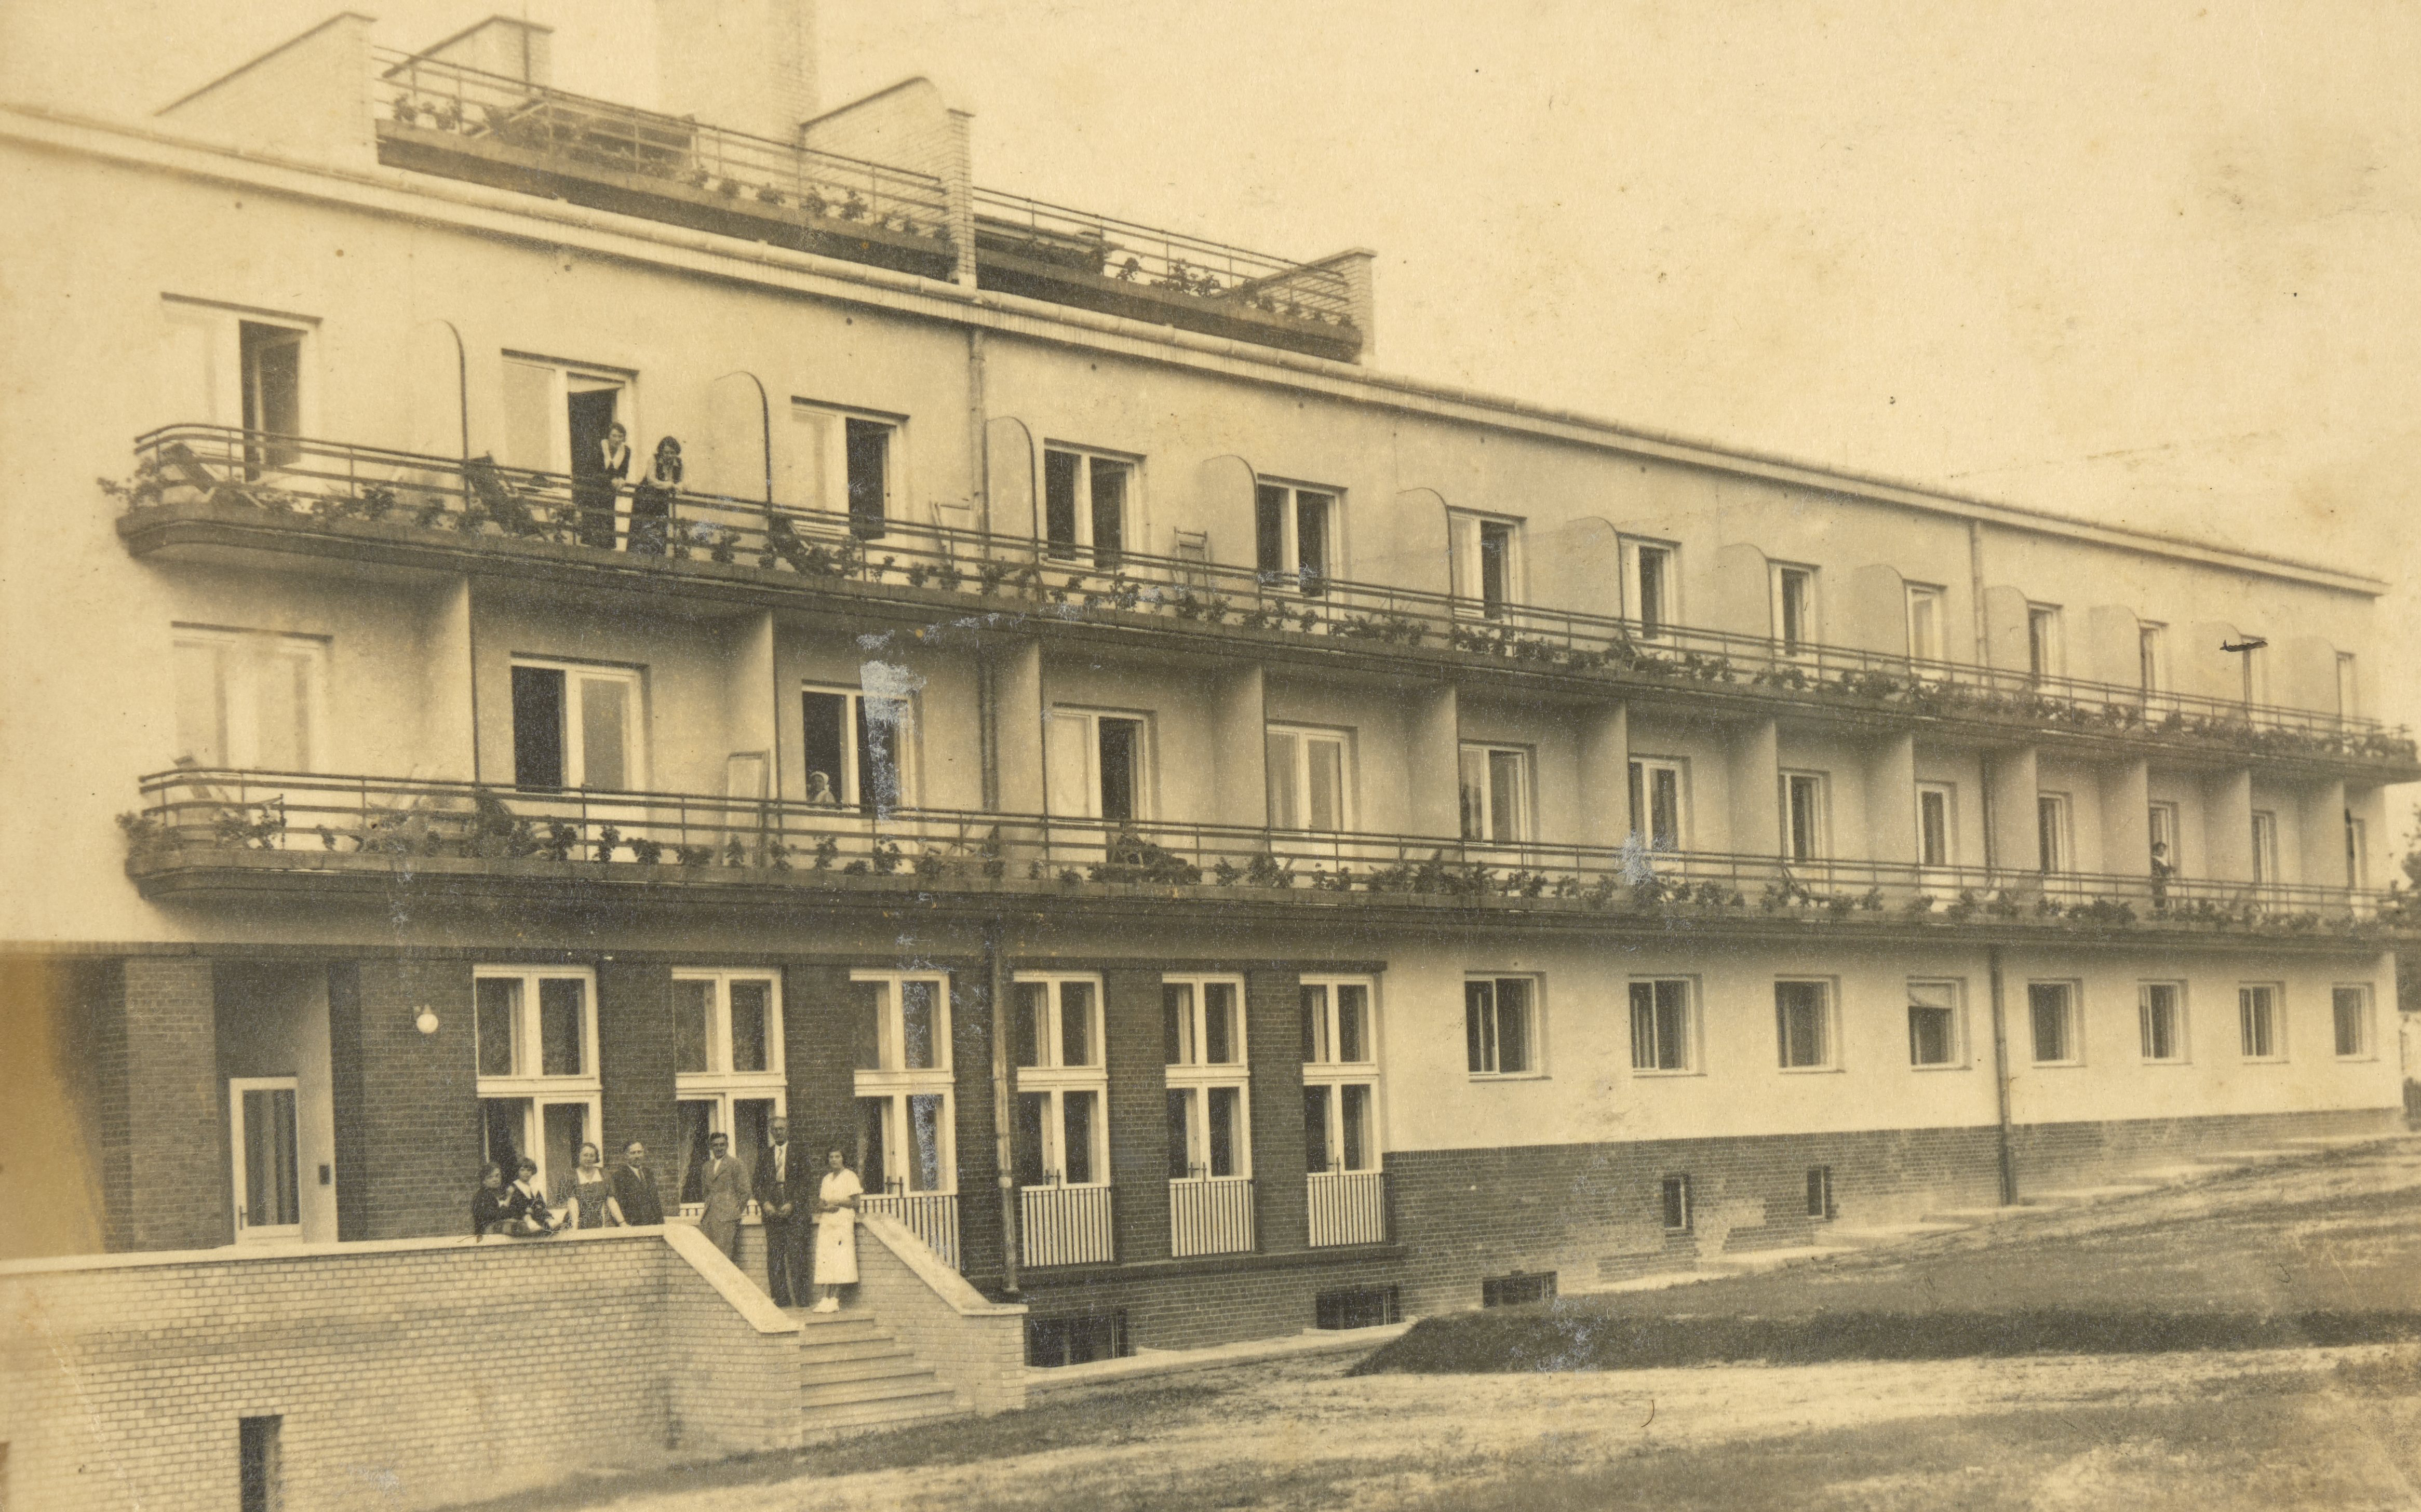 Будинок відпочинку в Бориславі, 1930-ті роки.